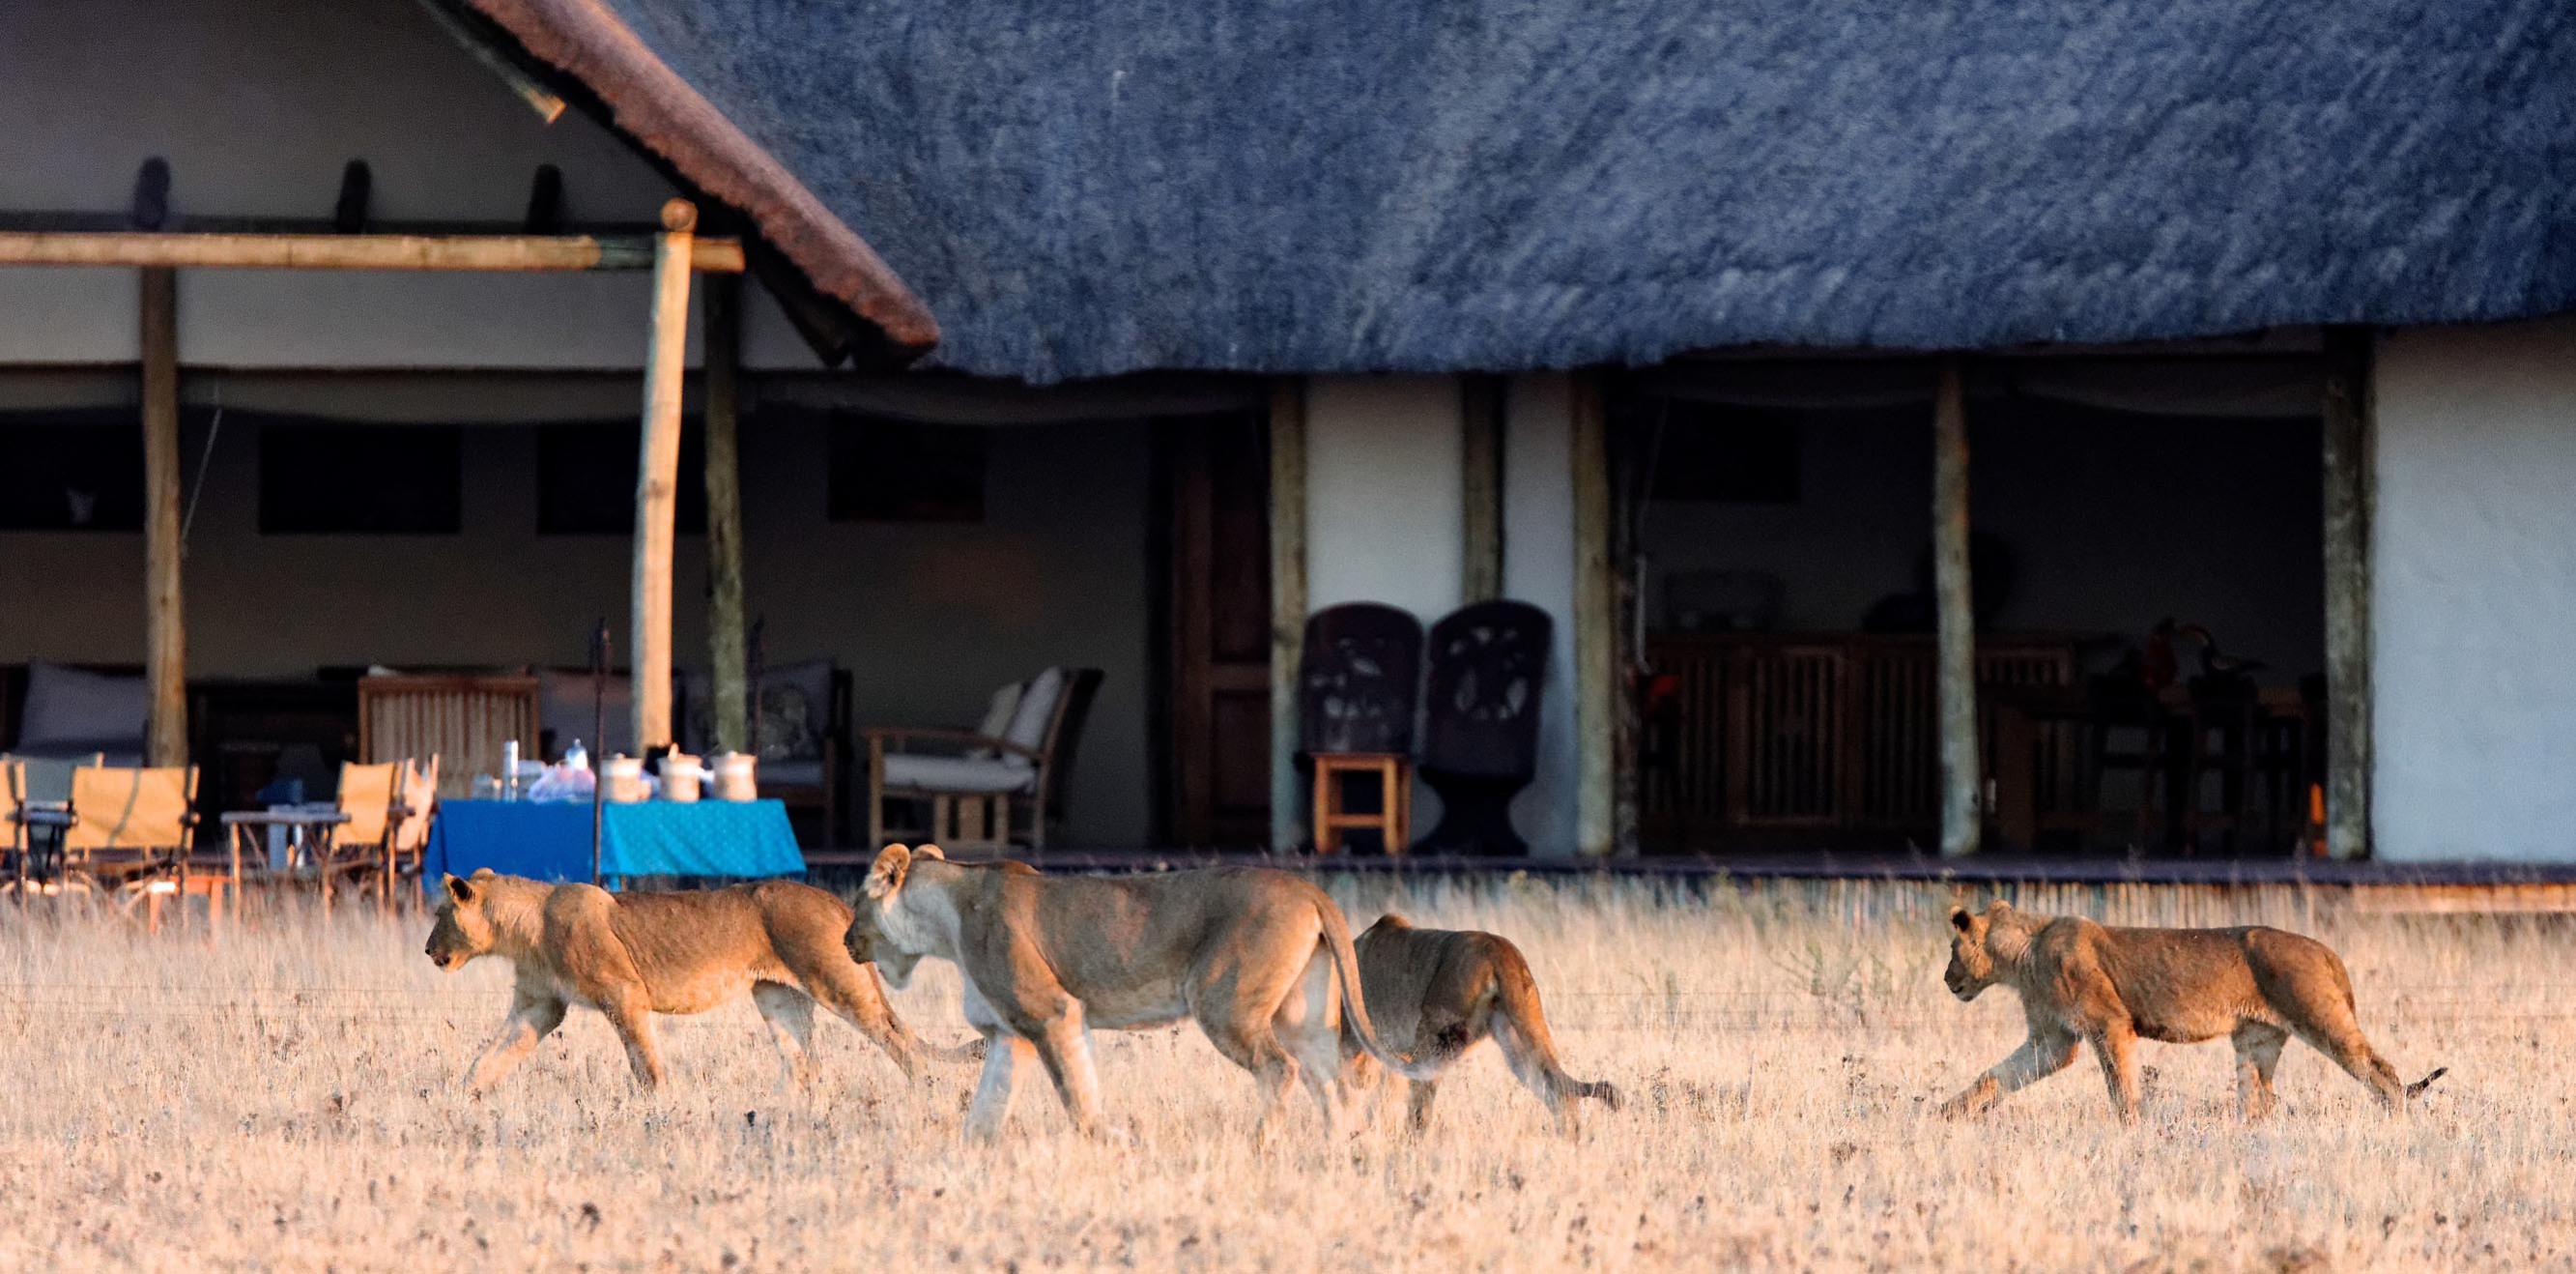 ¿Sueñas con un viaje inolvidable por Kenia? Podemos hacerlo realidad, solo escoge tu estilo de safari.